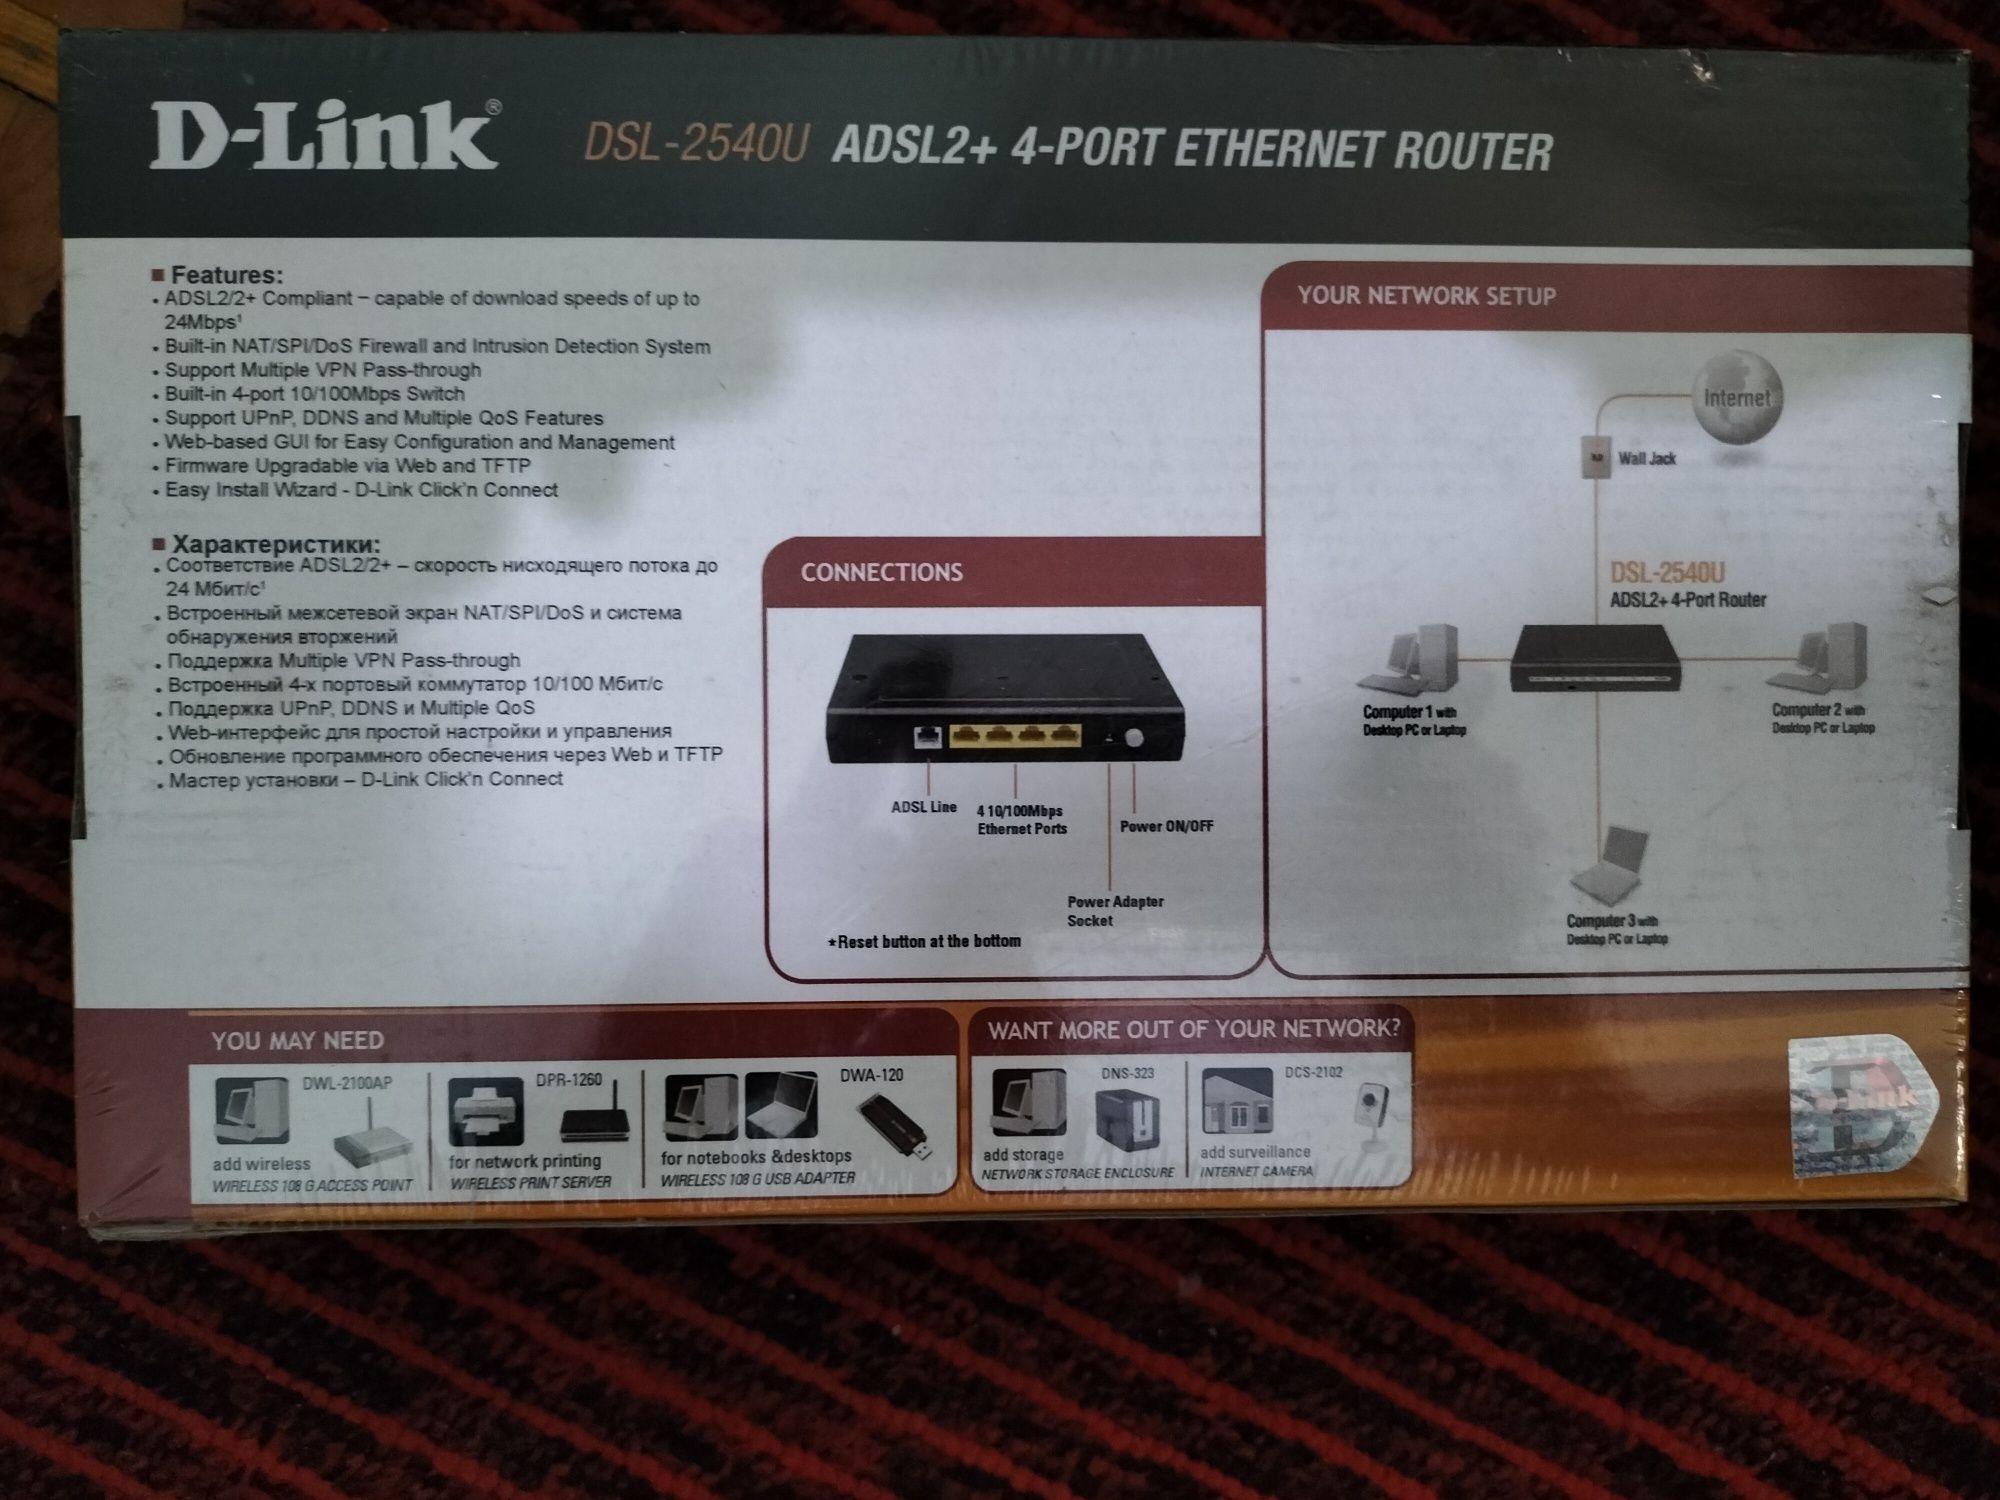 ADSL2 +4 port D-Link DSL-2540U